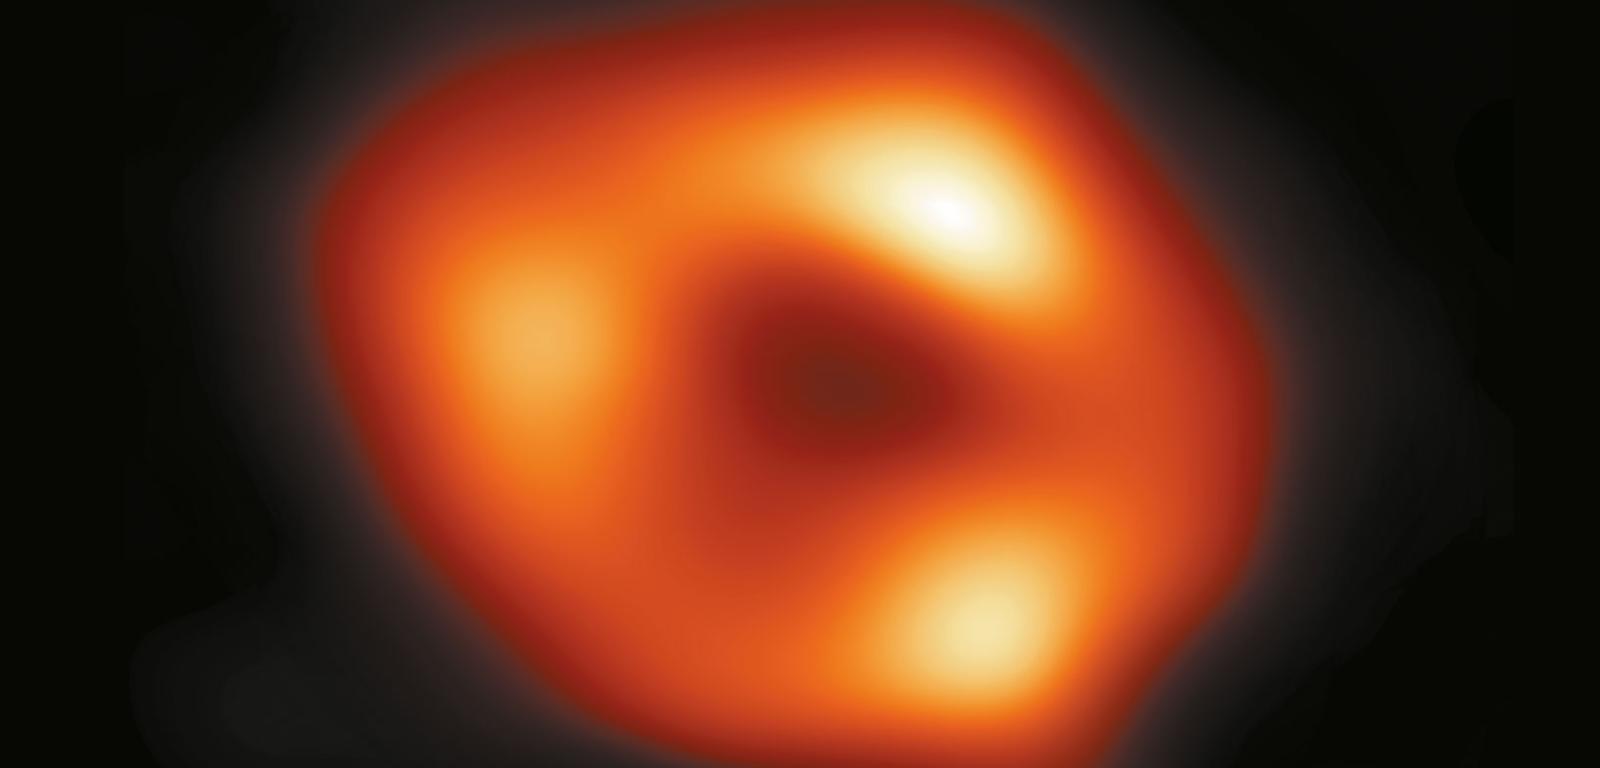 Teleskop Horyzontu Zdarzeń wykonał pierwsze zdjęcie Sagittariusa A* – supermasywnej czarnej dziury w centrum Drogi Mlecznej.